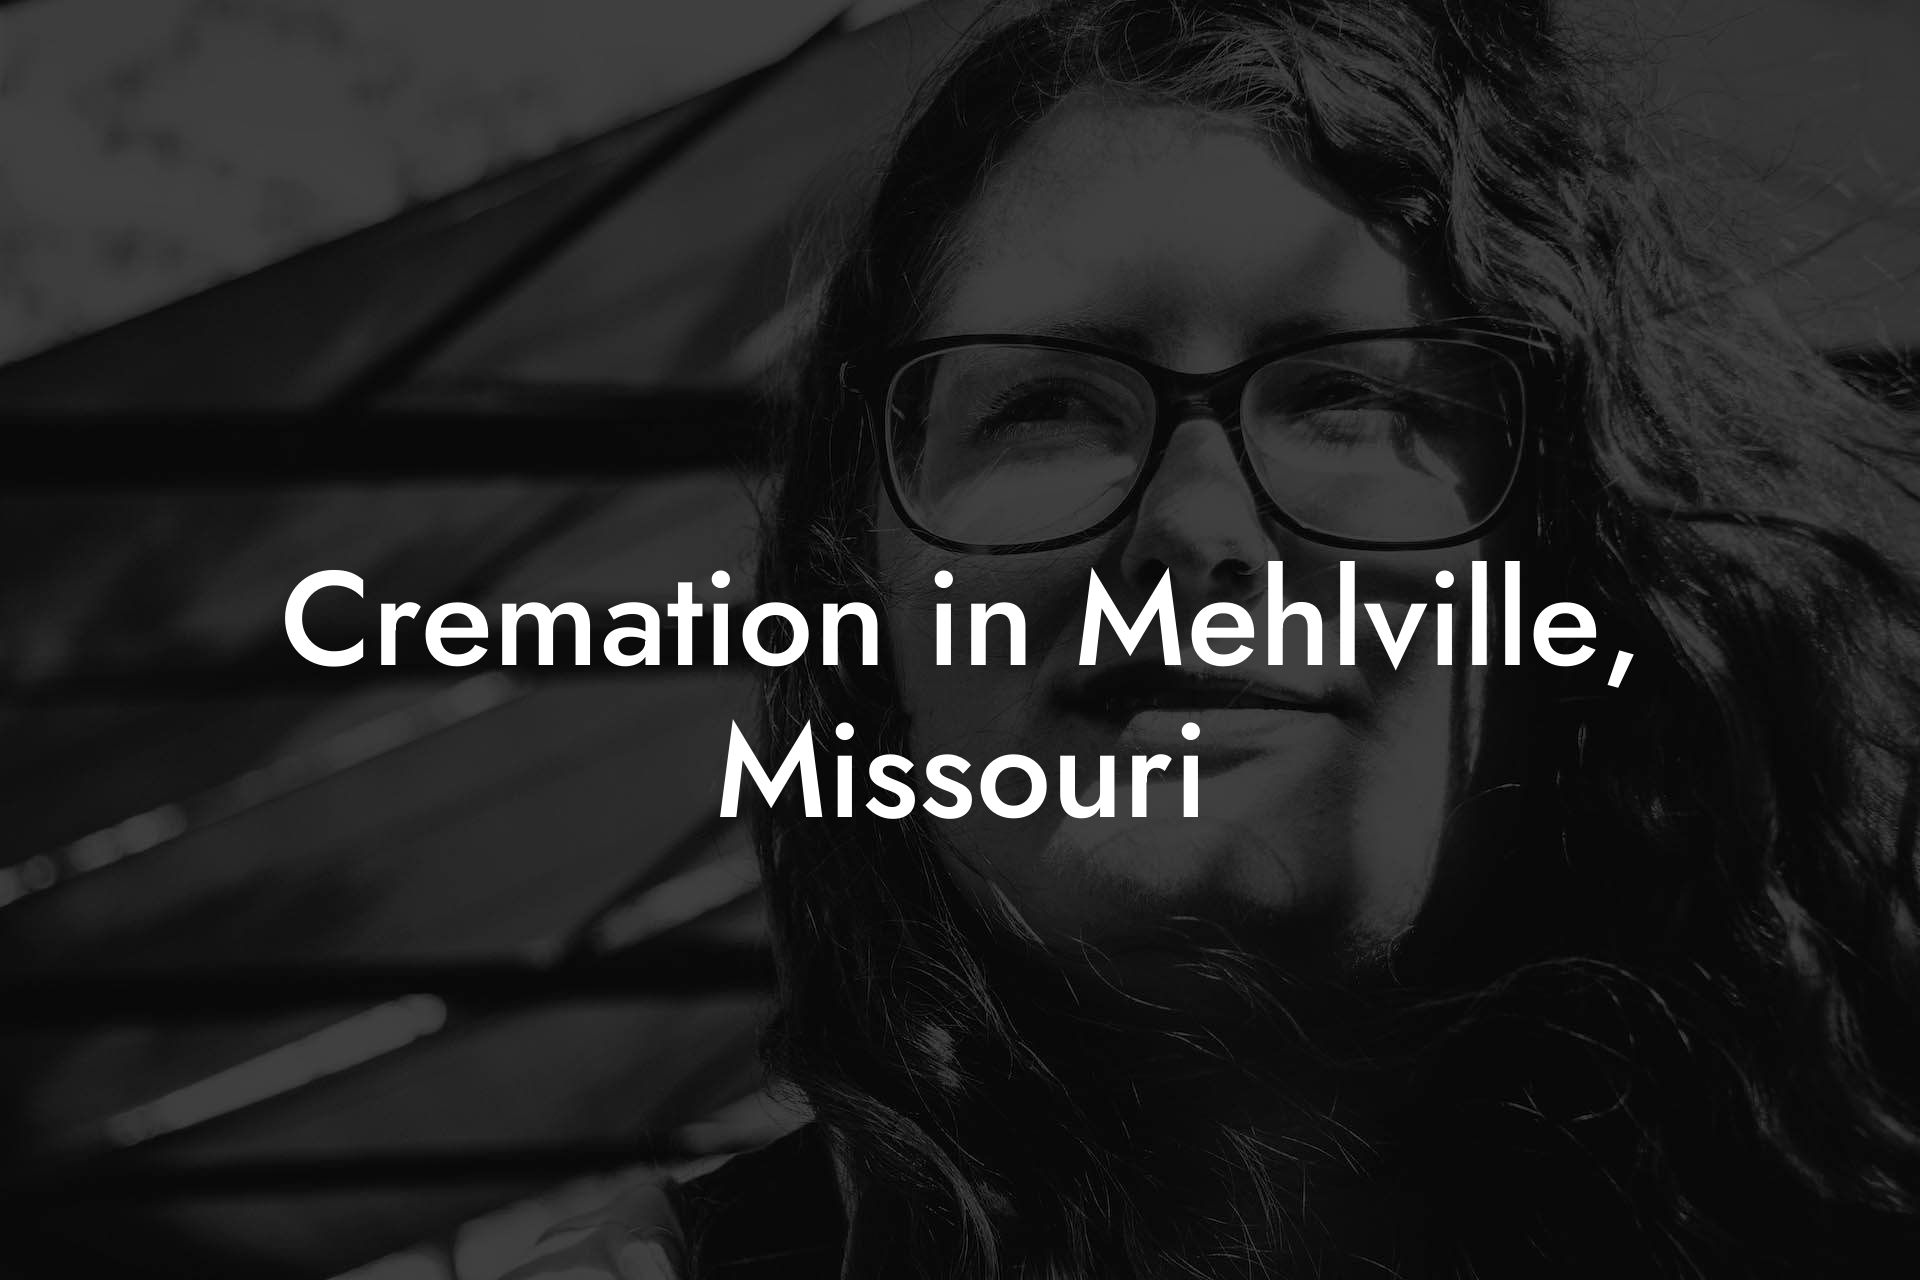 Cremation in Mehlville, Missouri